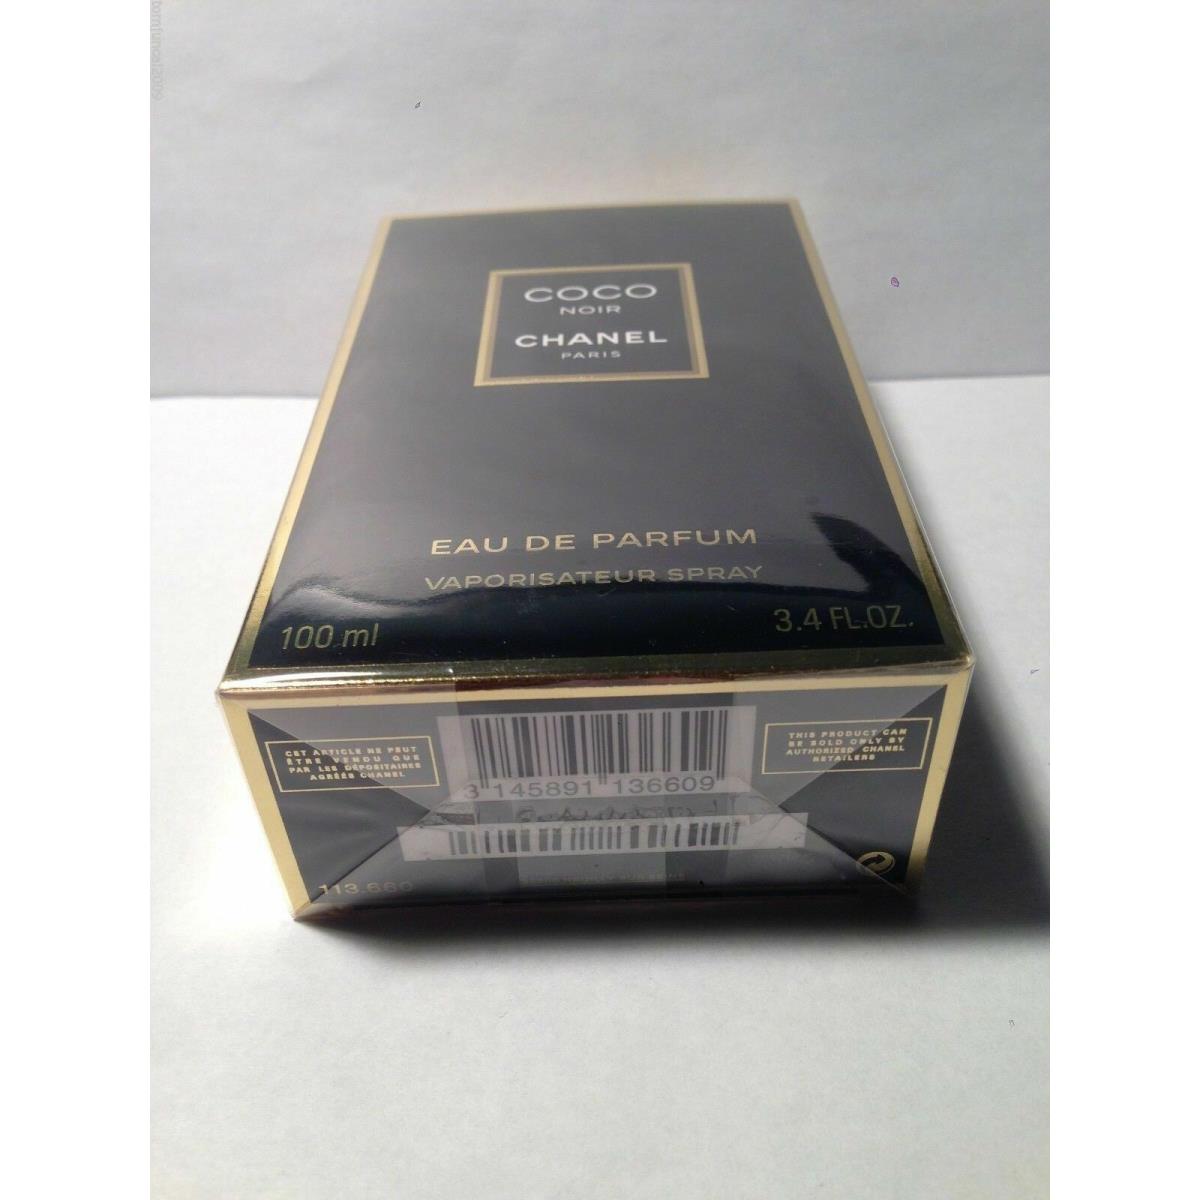 Chanel Coco Noir Perfume For Women 3.4oz Eau De Parfum - Chanel perfume, cologne,fragrance,parfum - 3145891136609